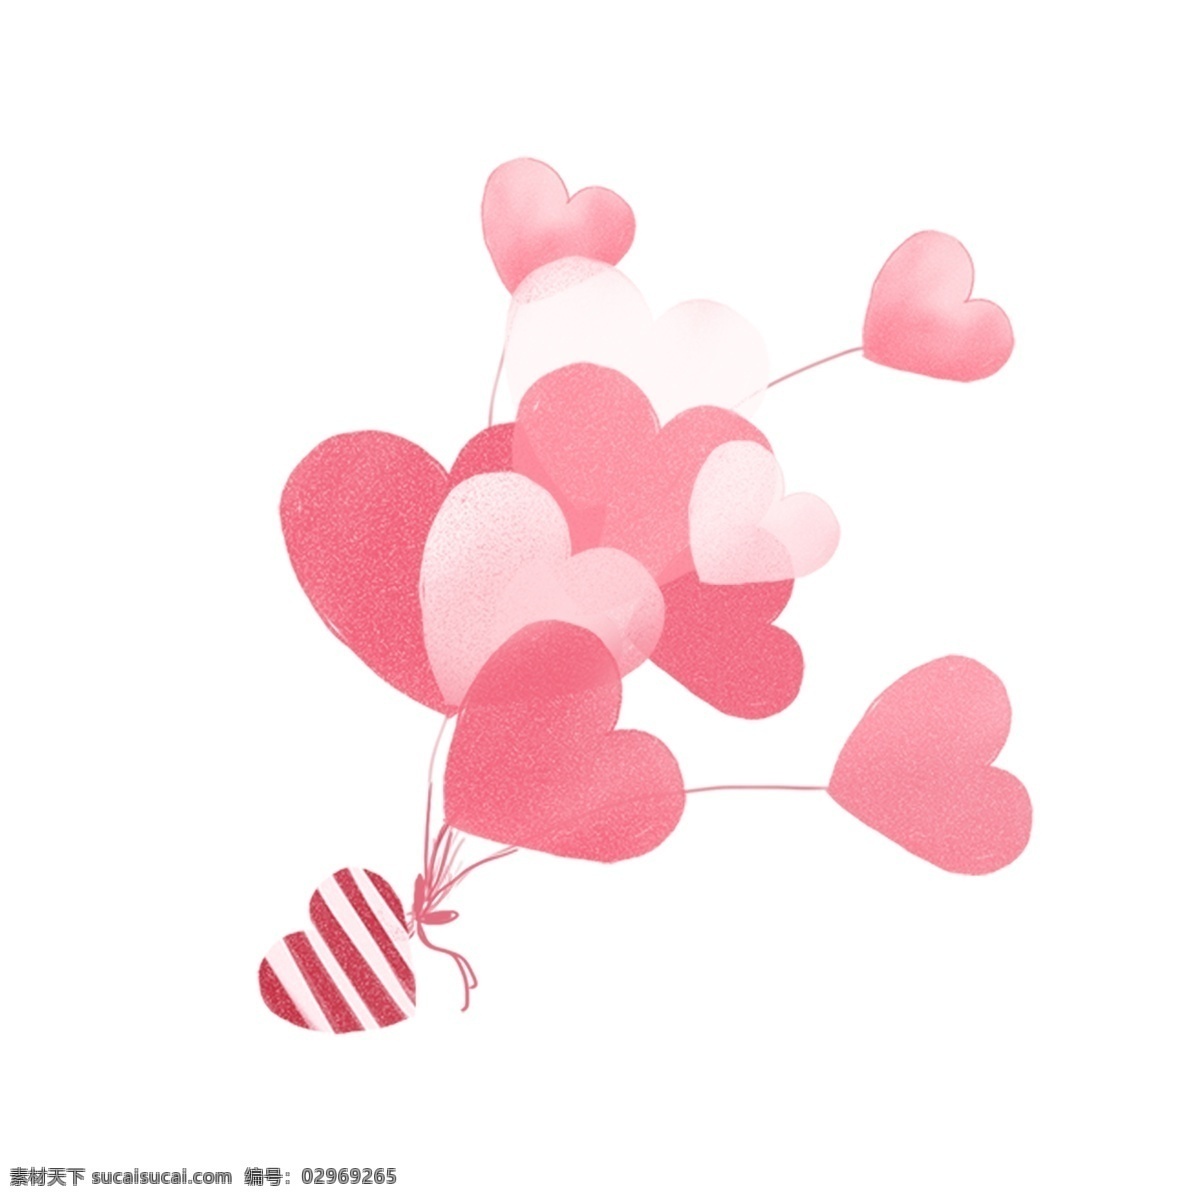 卡通 粉色 爱心 漂浮 气球 情人节 七夕 装饰 源文件 卡通气球 爱心桃气球 粉色爱心 漂浮气球 情人节气球 七夕装饰气球 粉色气球